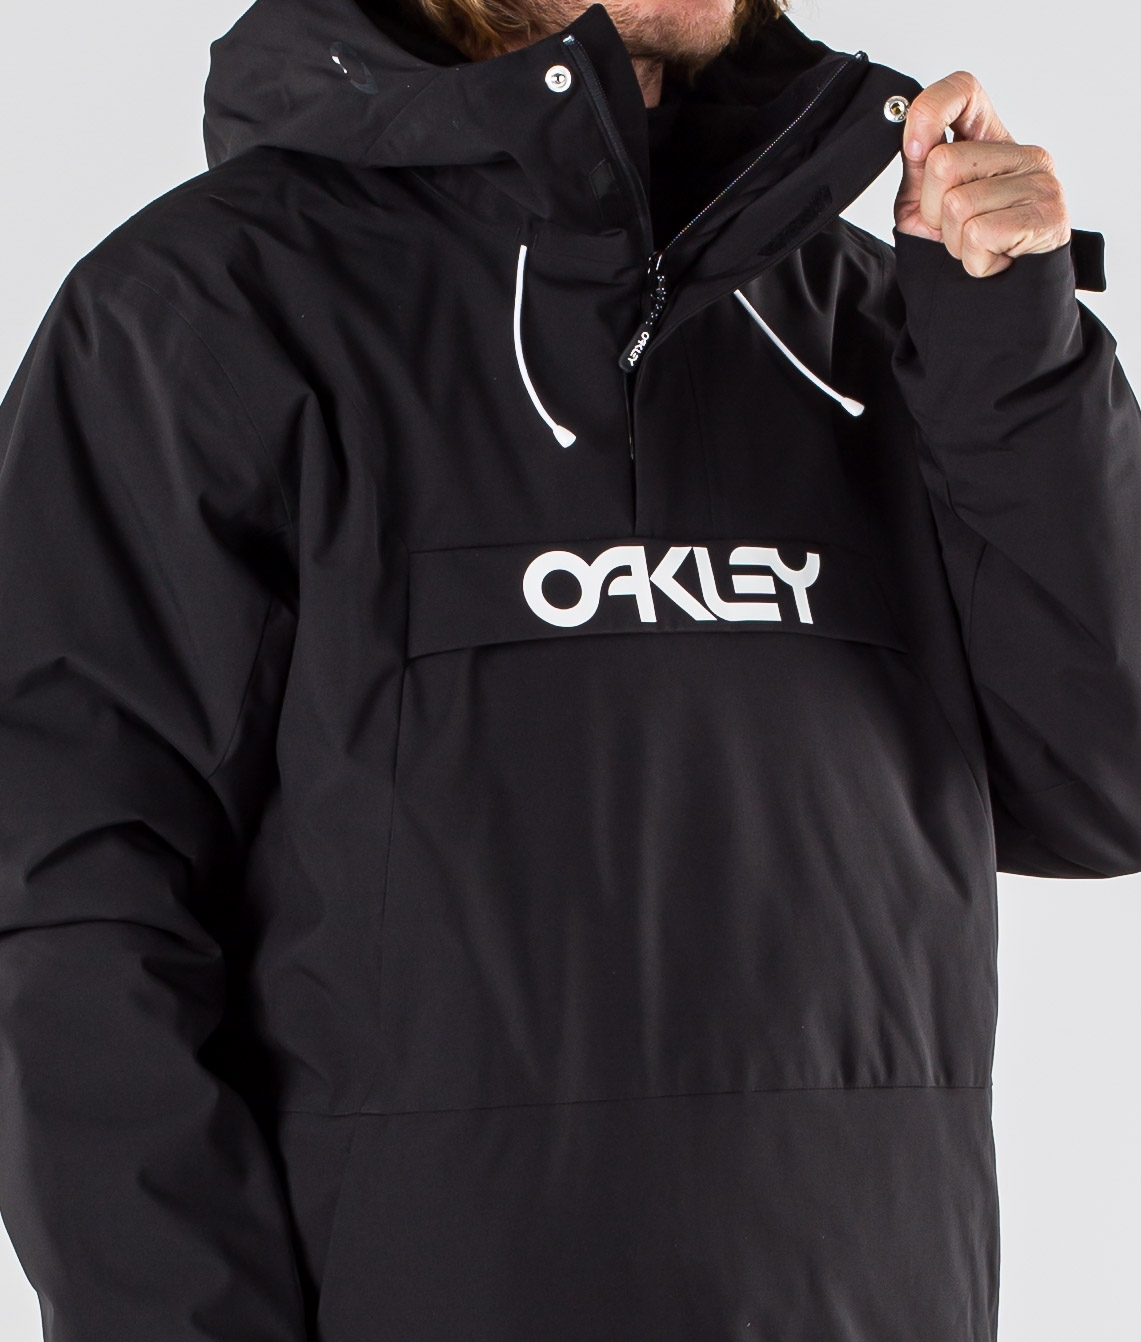 oakley ski wear